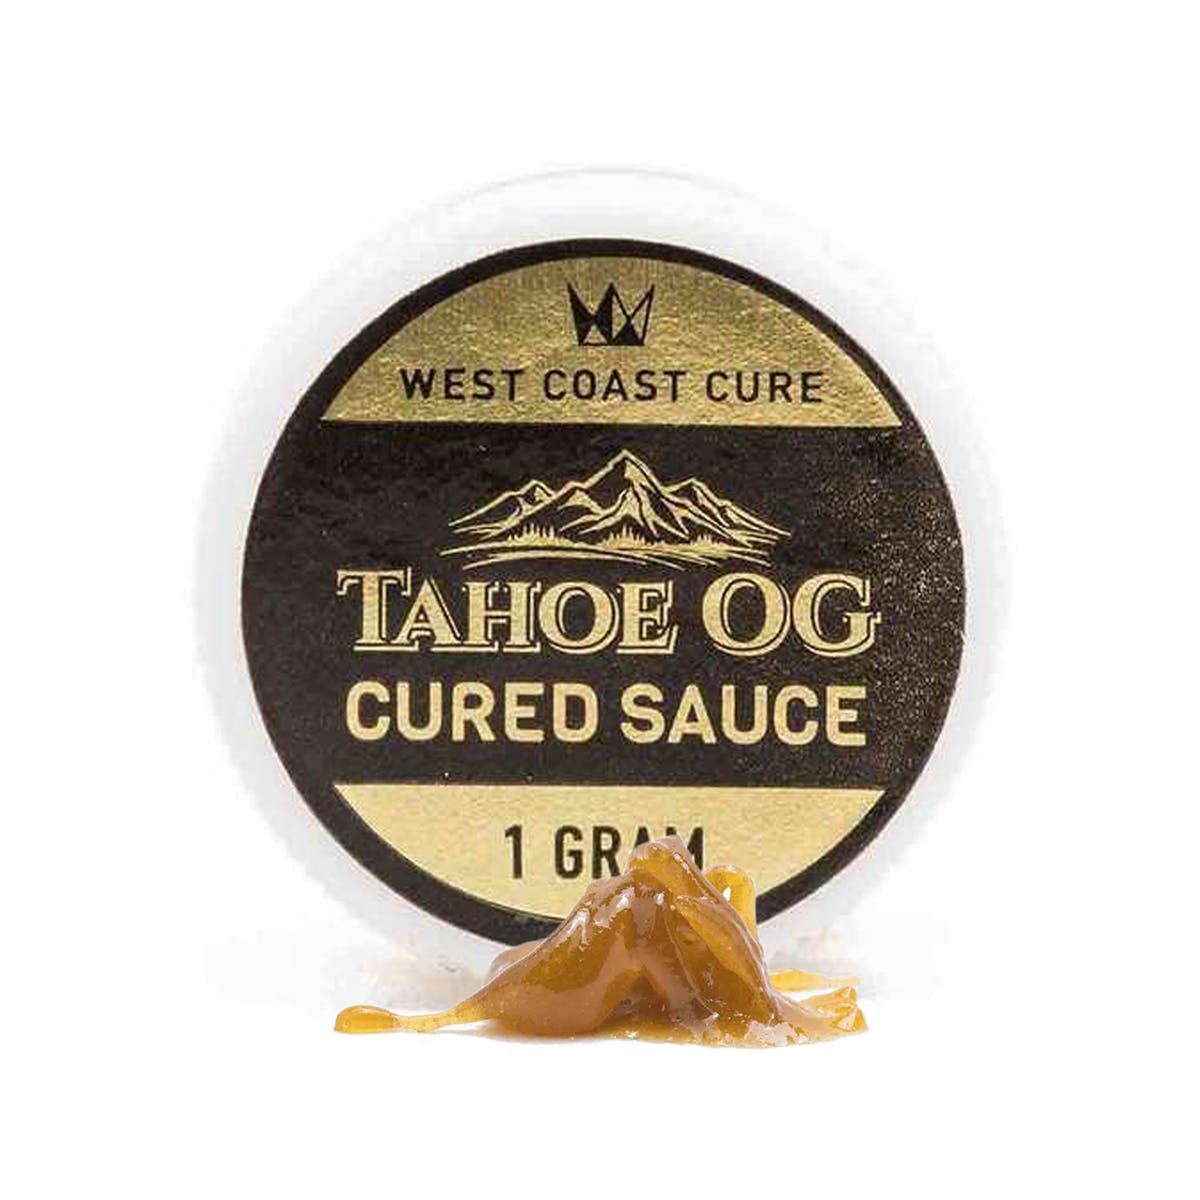 Tahoe OG Cured Sauce